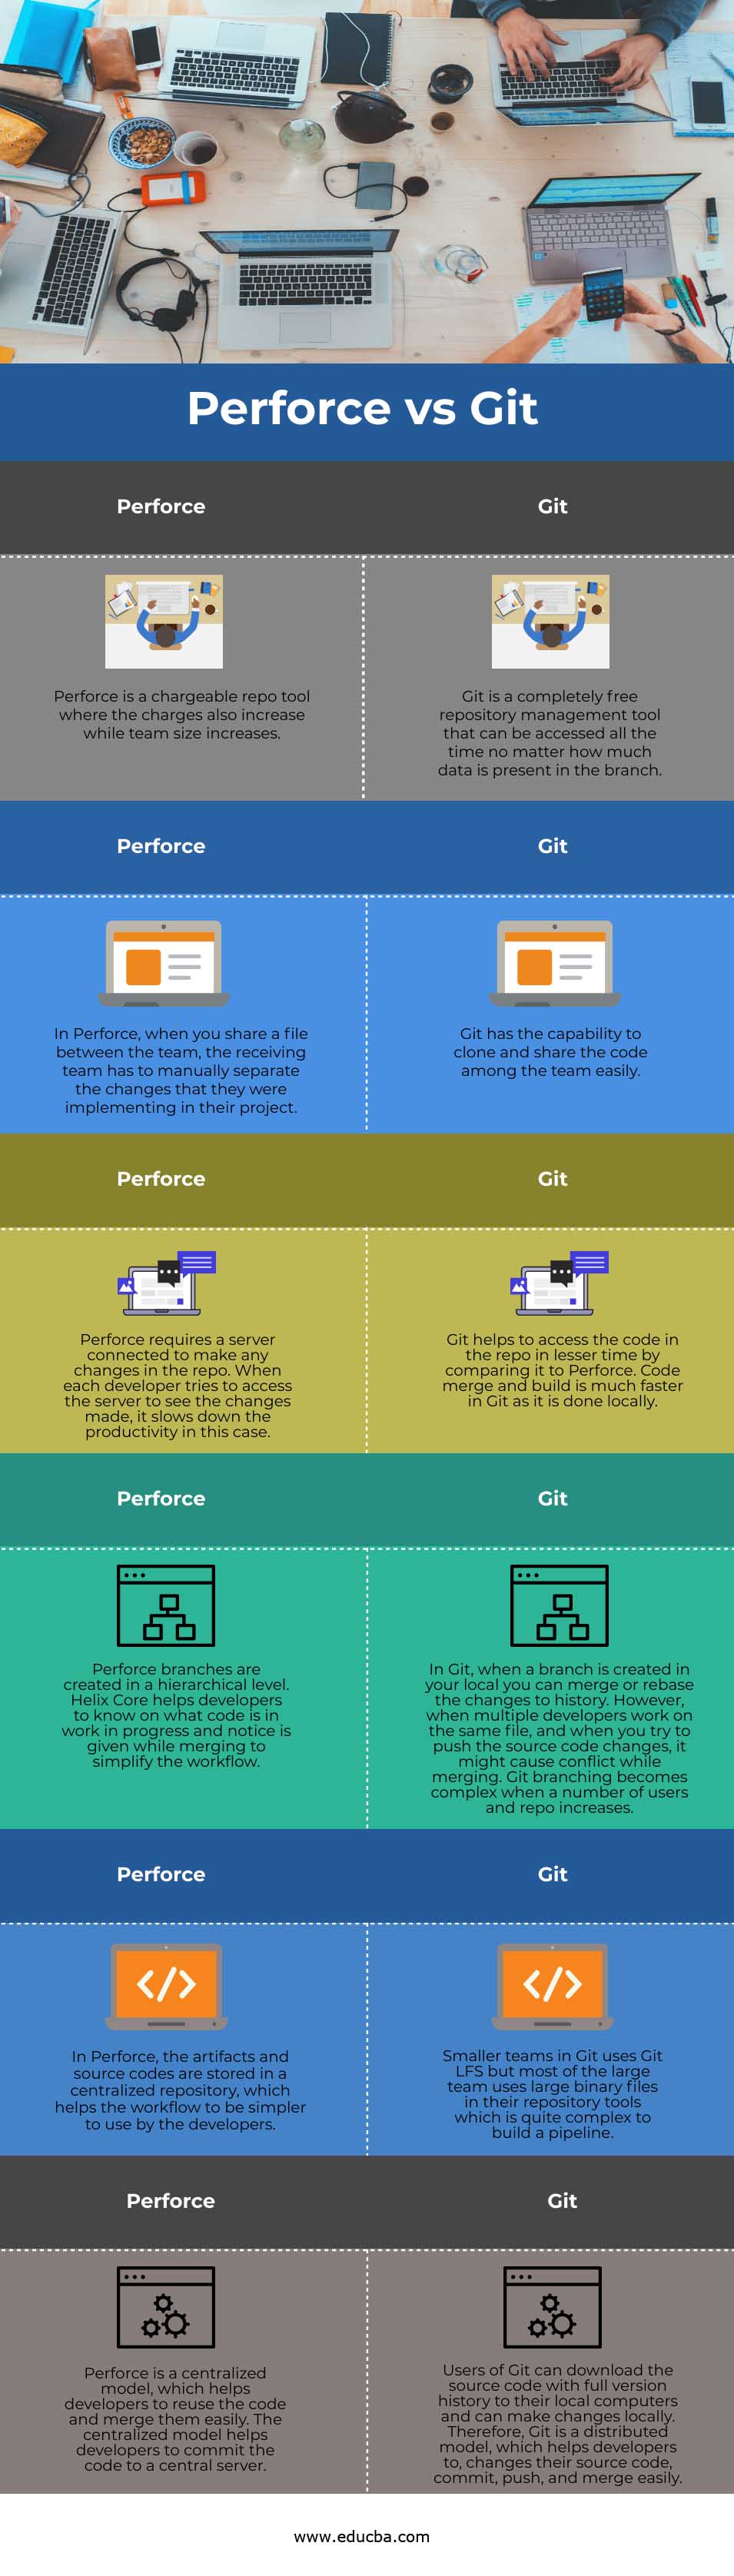 Perforce vs Git info